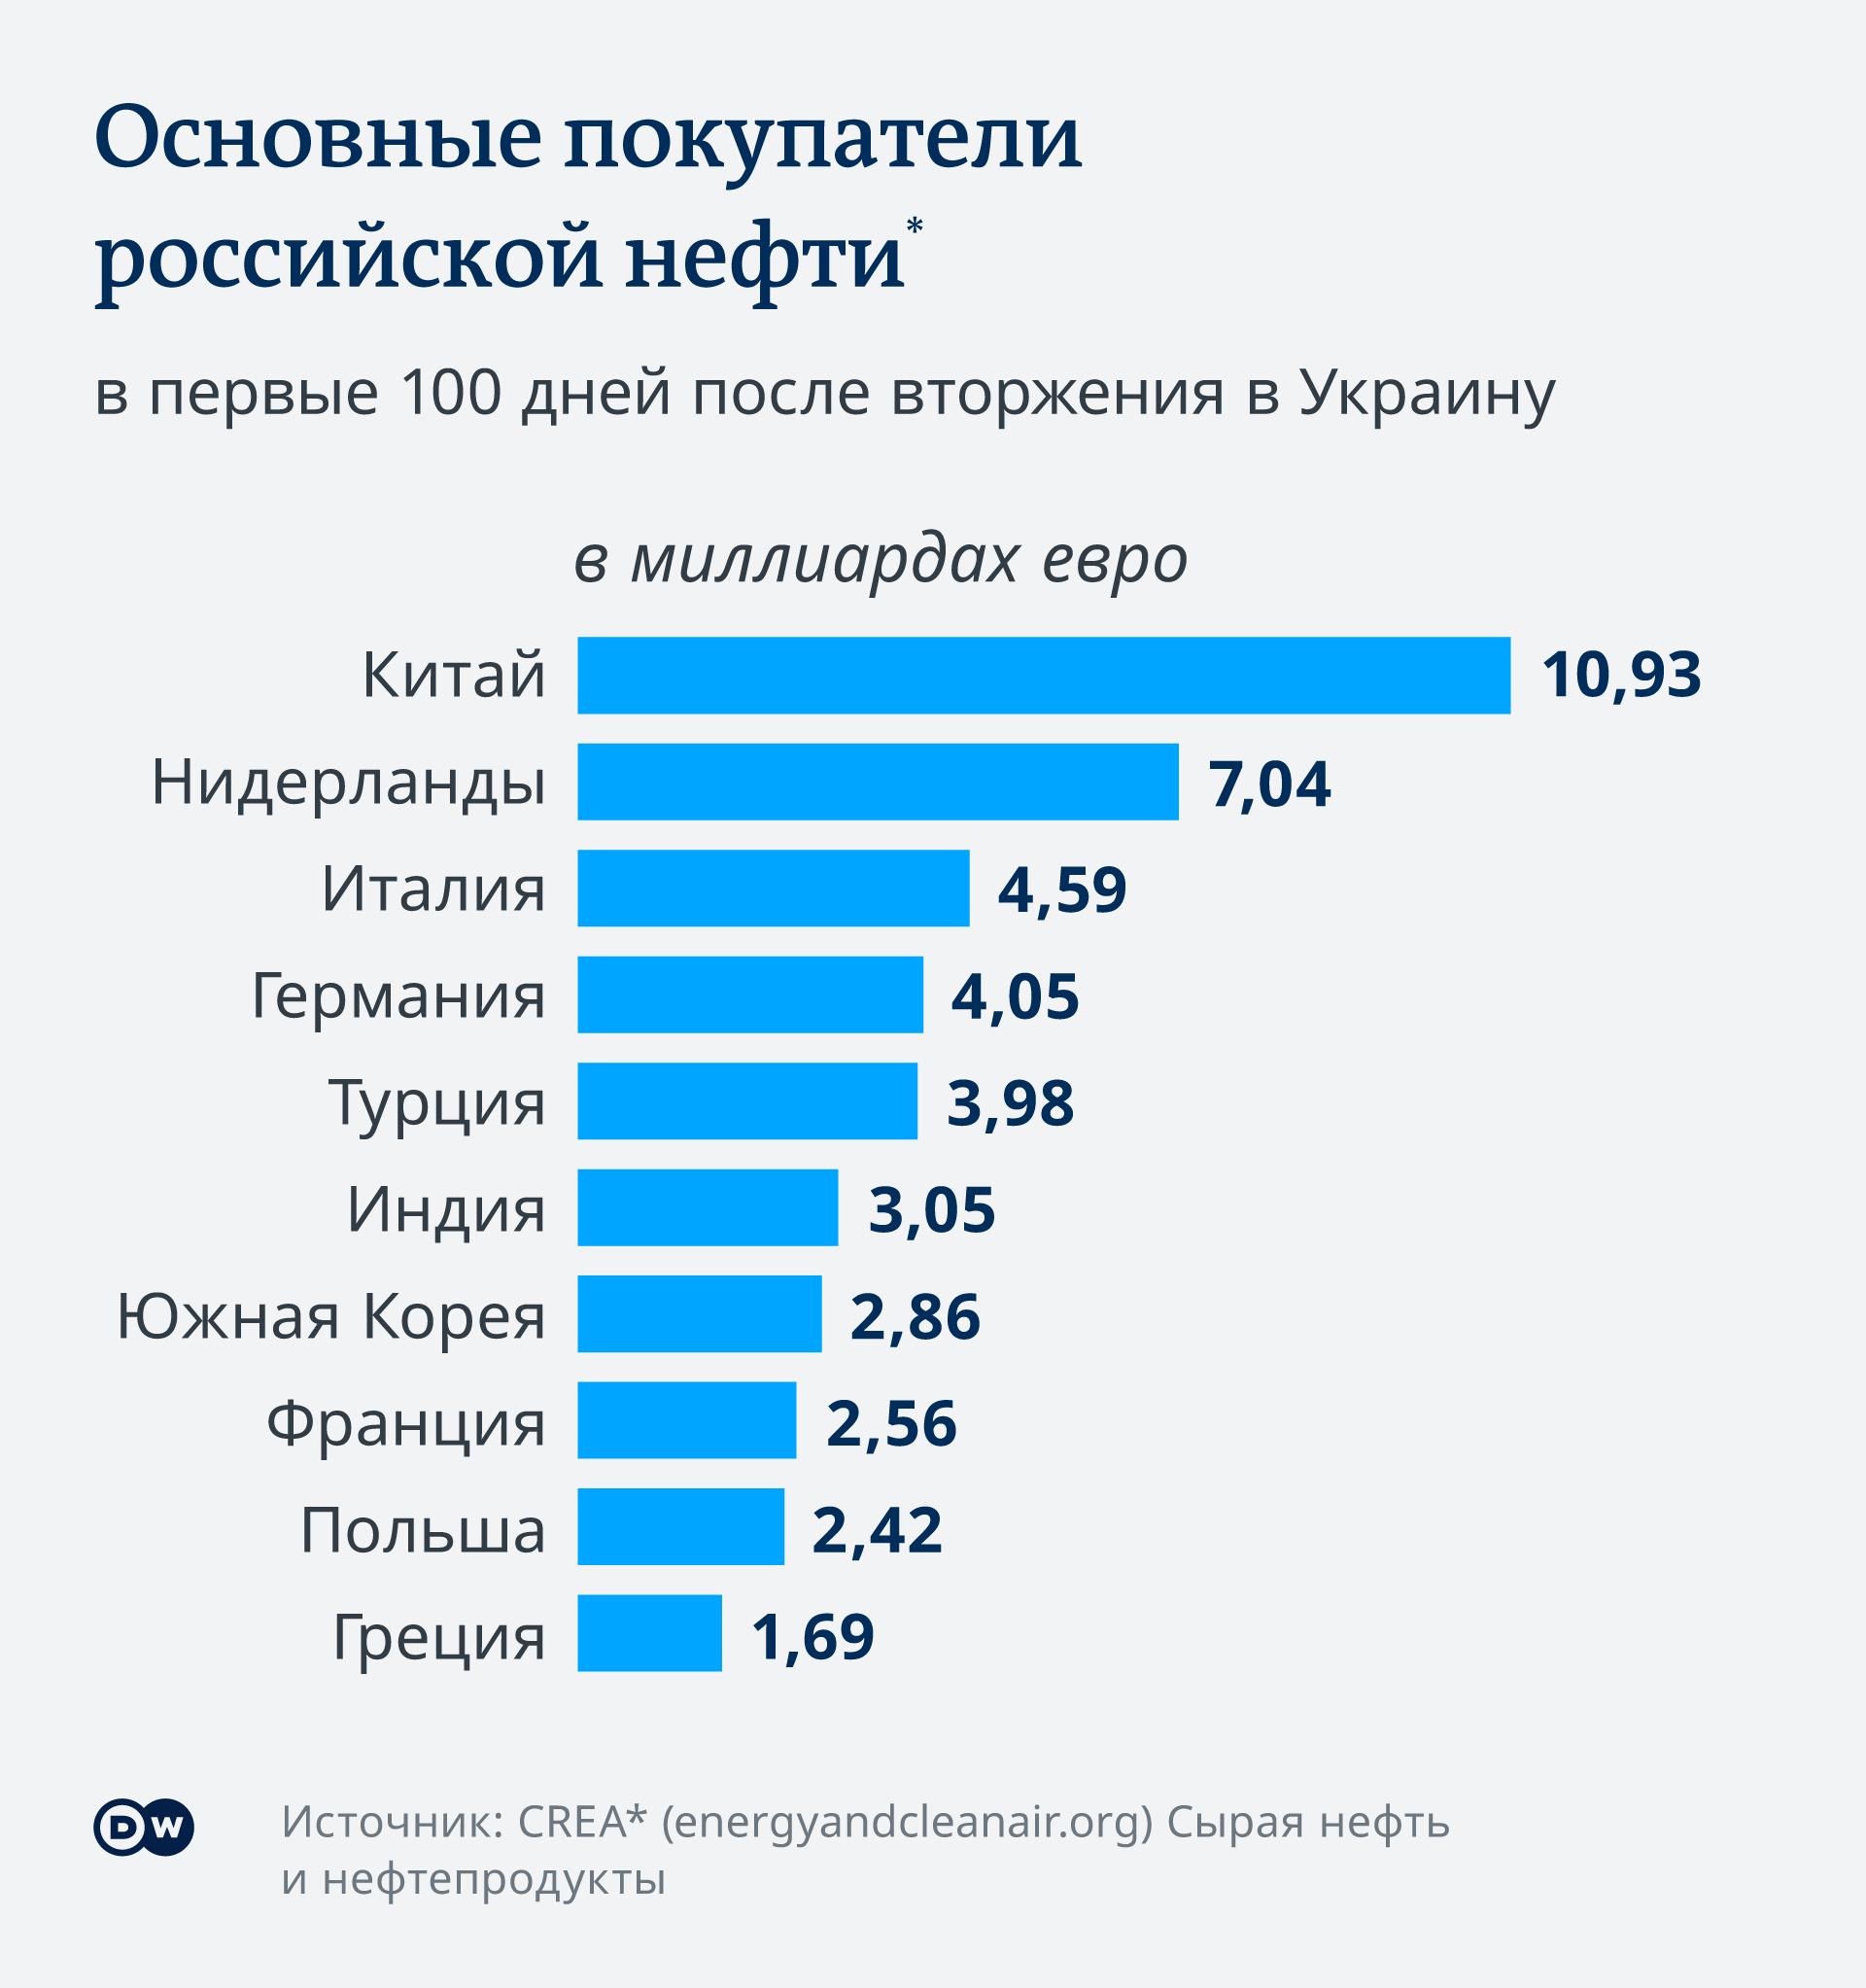 Инфографика DW: основные покупатели российской нефти